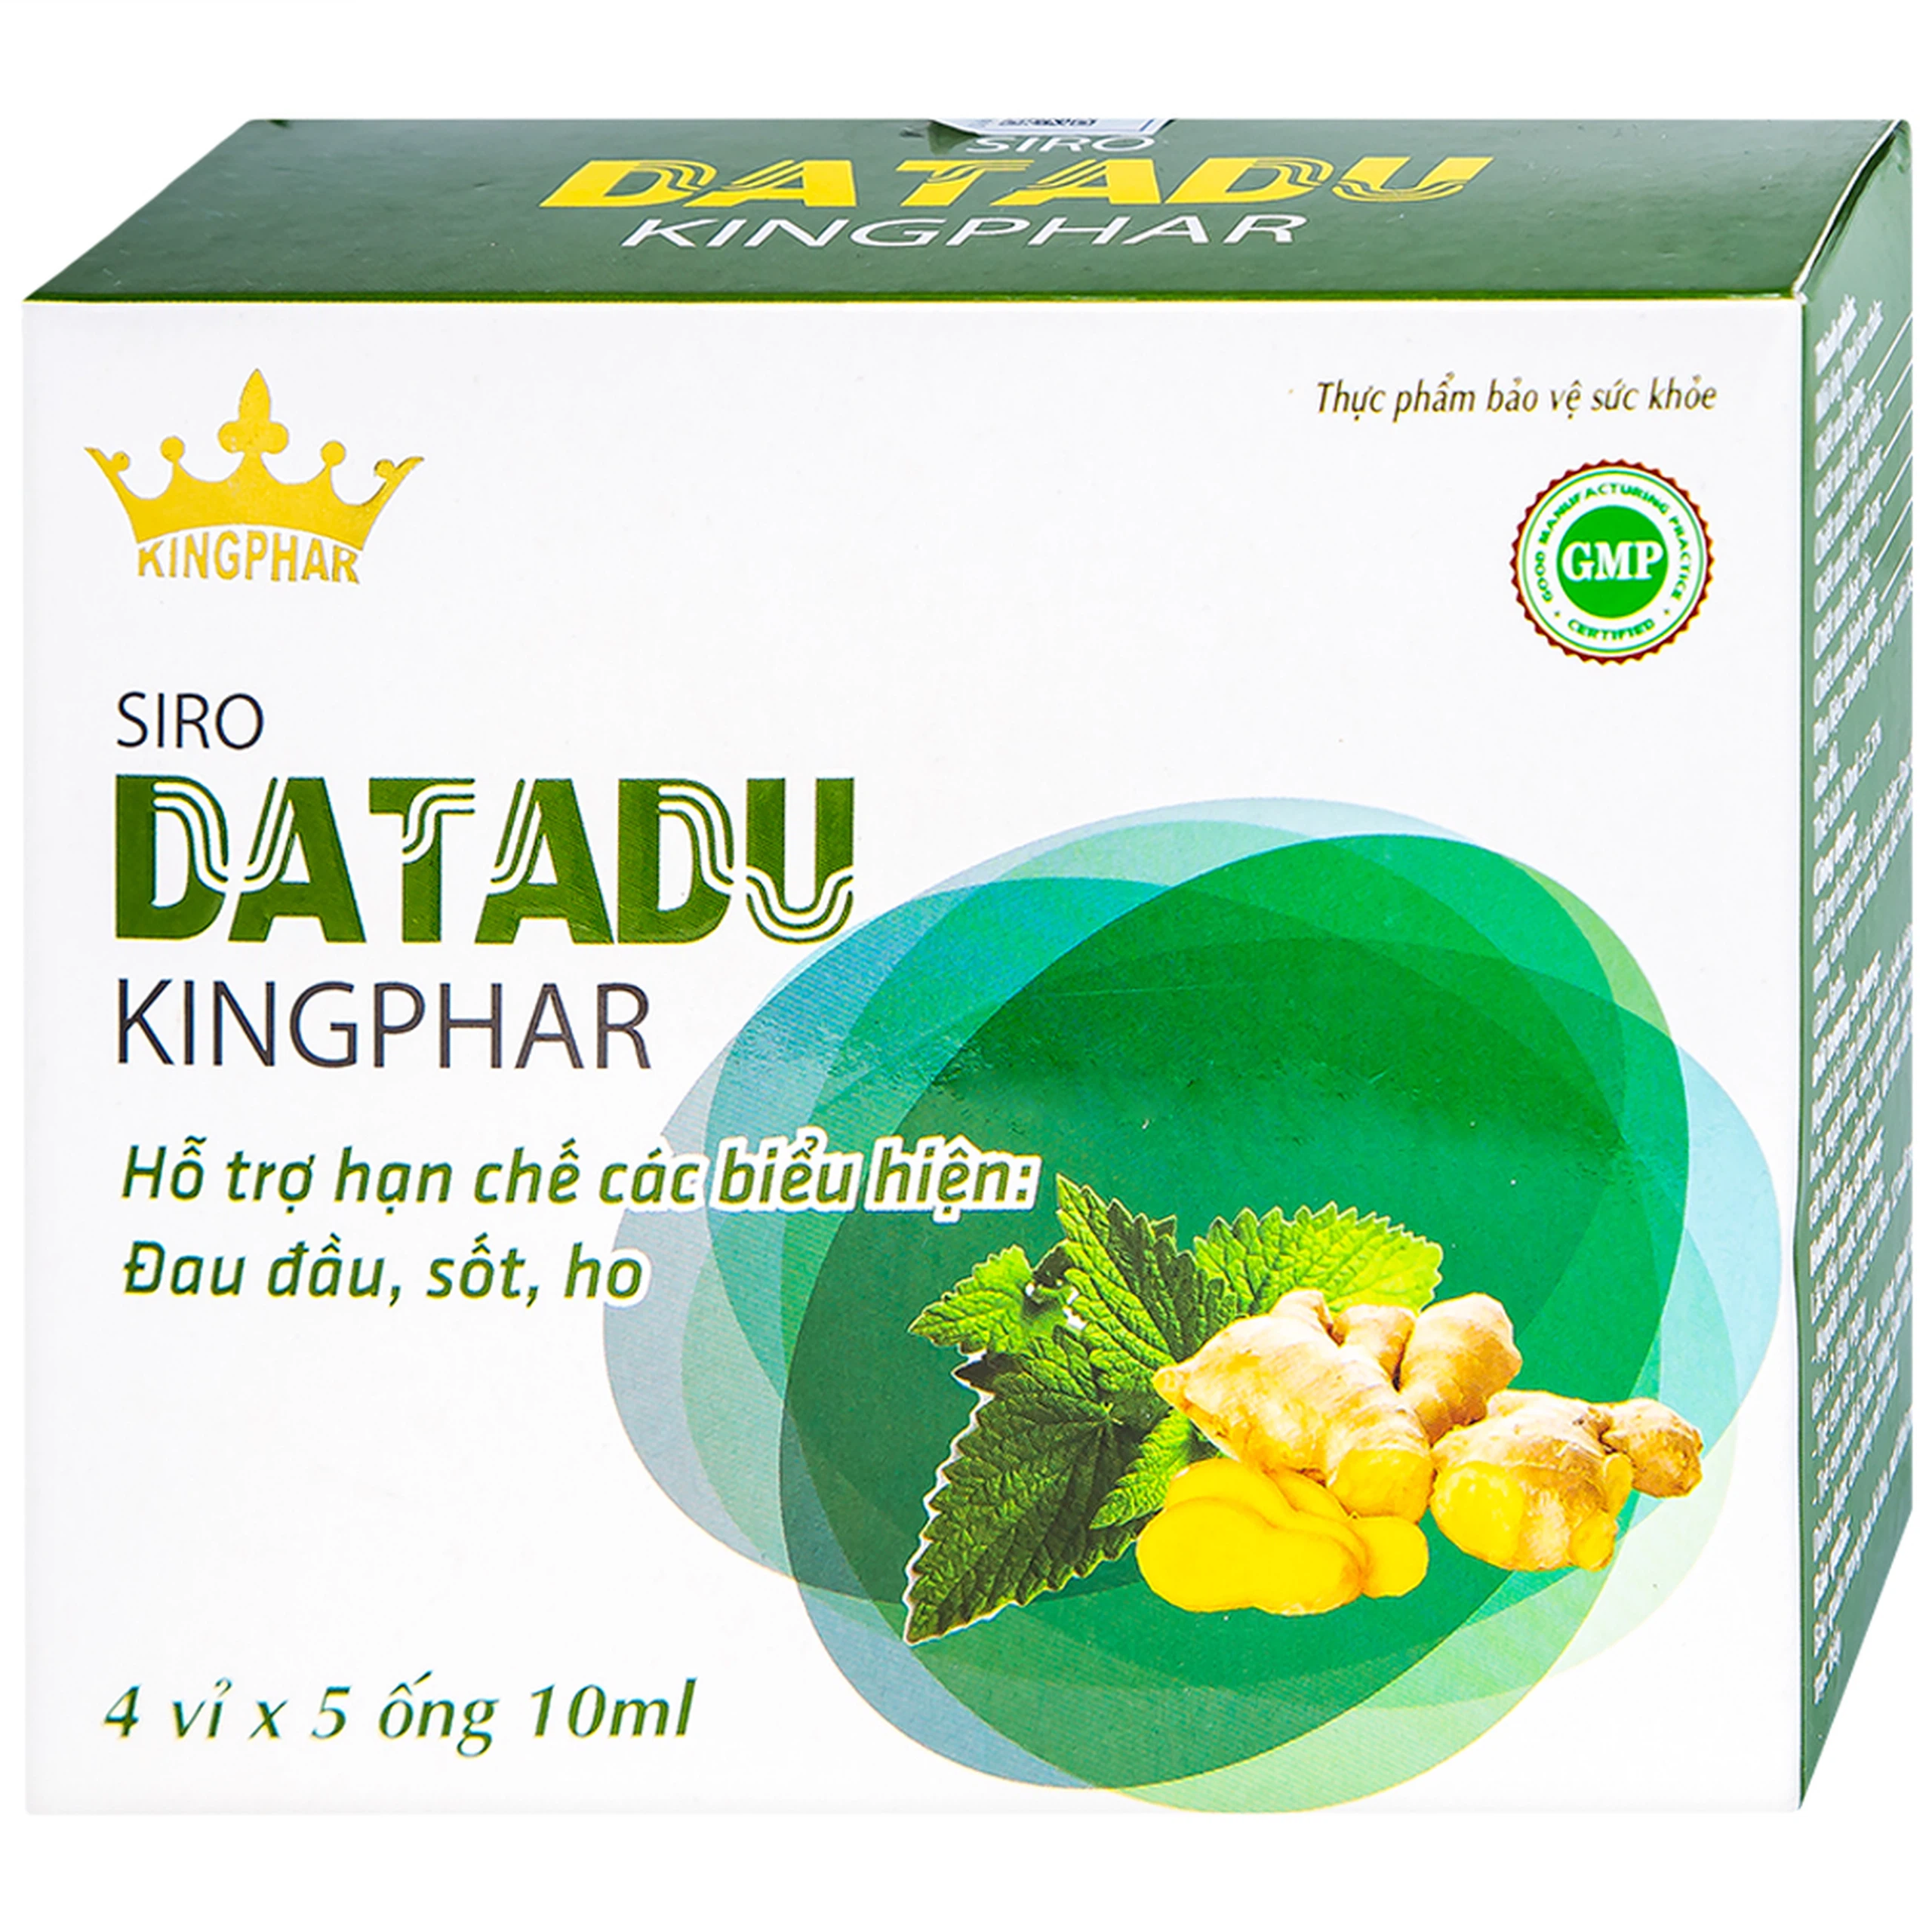 Siro Datadu Kingphar hỗ trợ hạn chế đau đầu, sốt, ho (4 vỉ x 5 ống x 10ml)